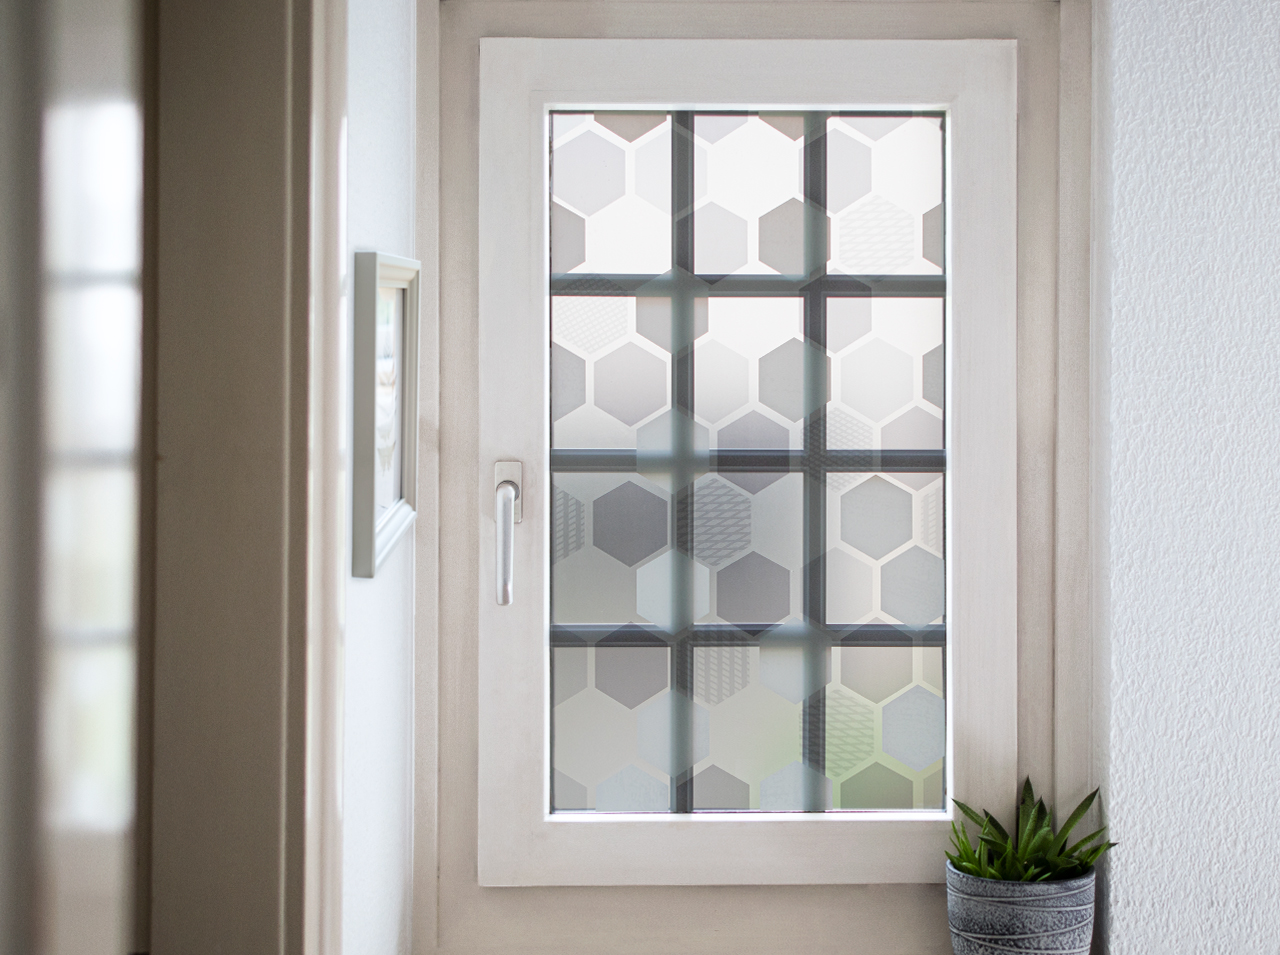 Fenster beklebt mit blickdichter Fensterfolie im Design von Waben in den Farben Weiß, Grau und Mint.